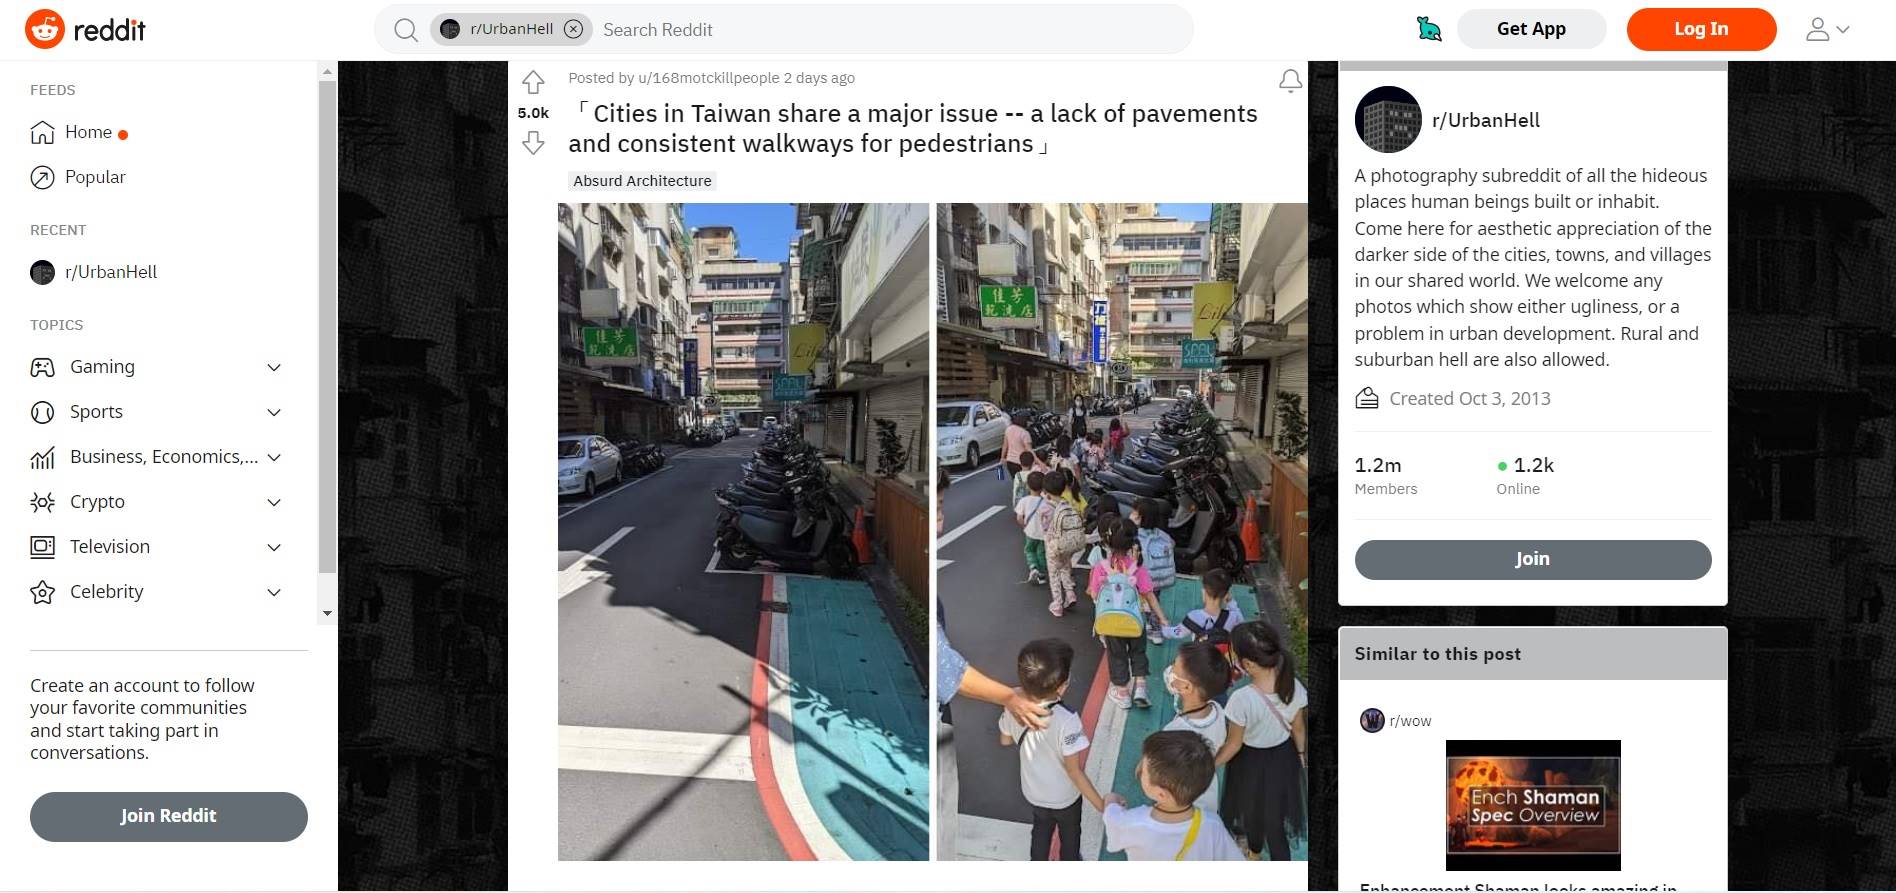 美國論壇《Reddit》25日貼出1張照片，說道「台灣的城市有個共同的問題，人行道不但少且銜接路型不夠一致」。